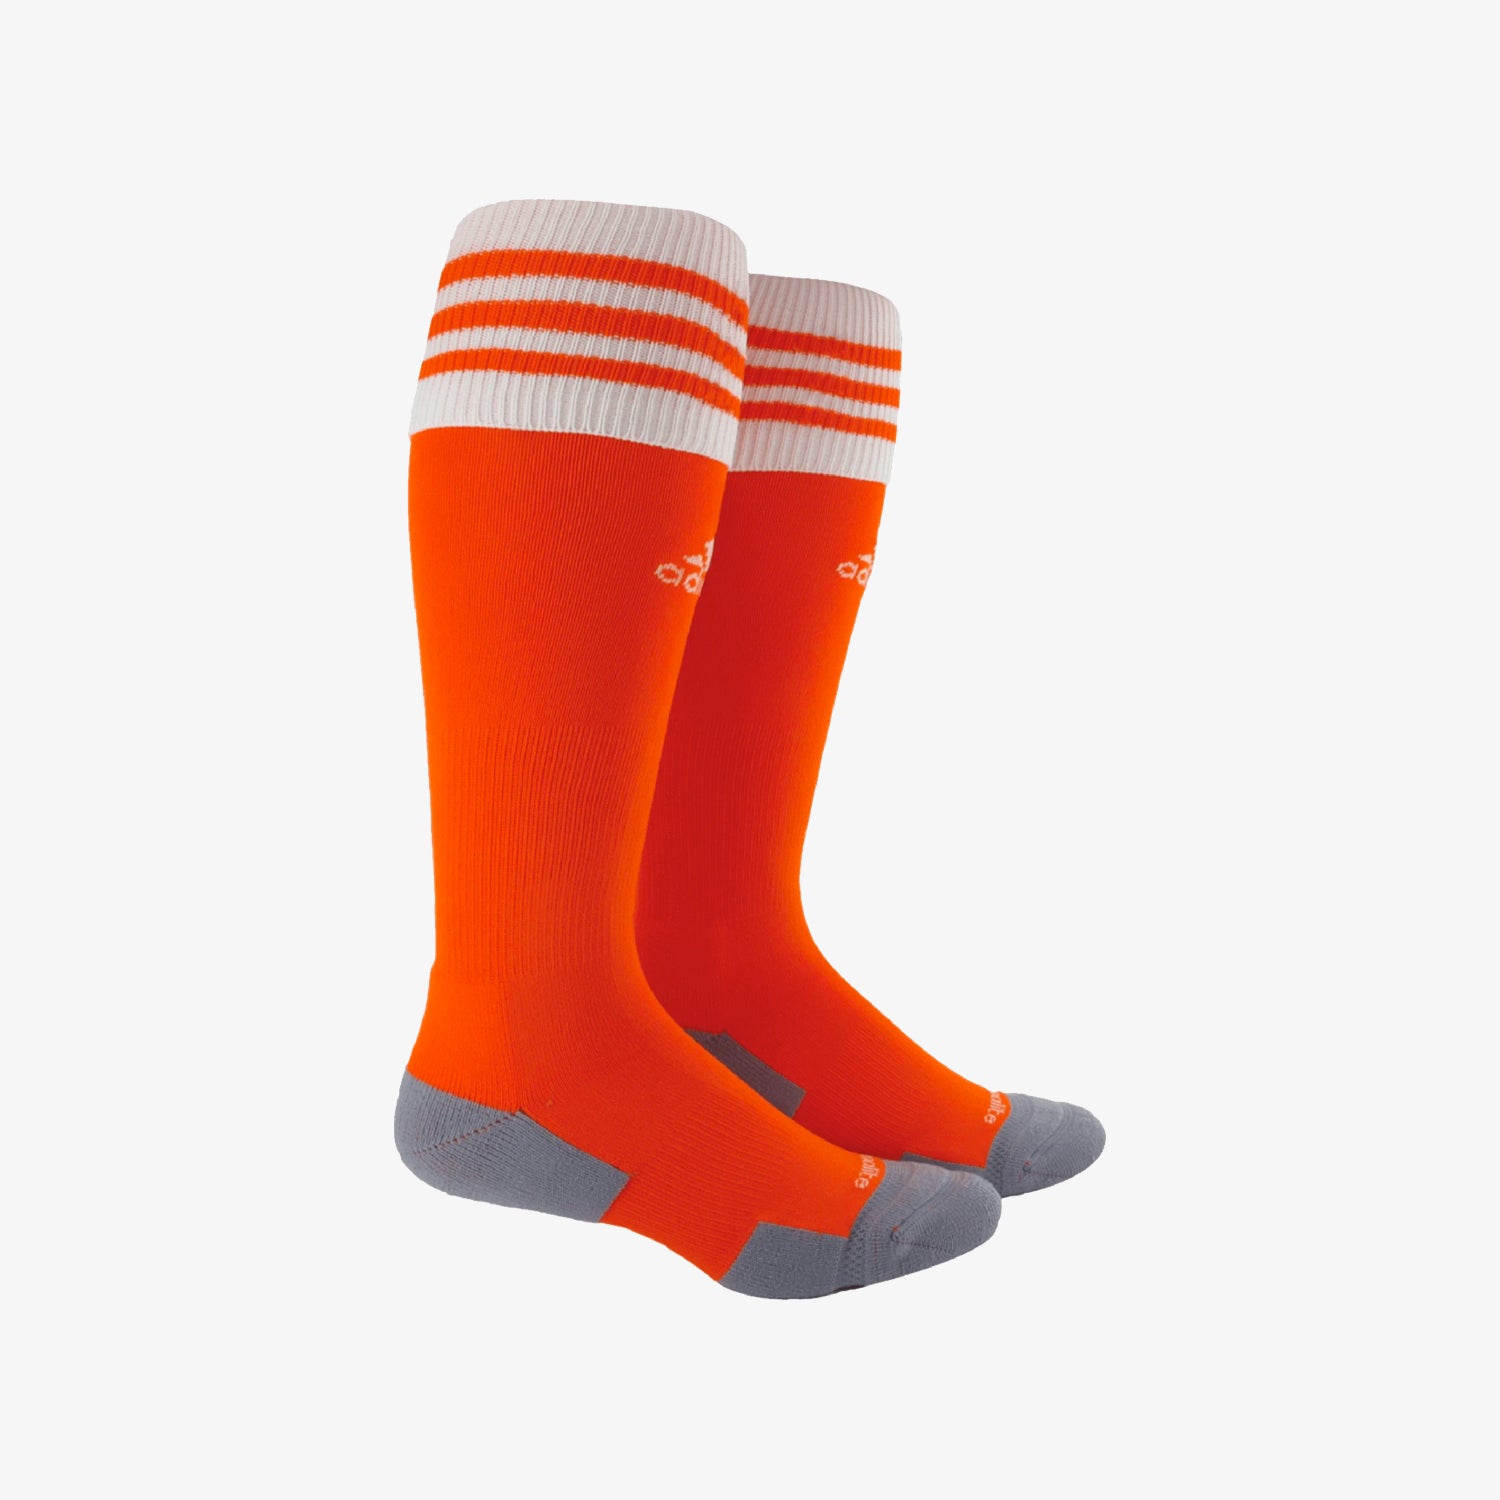 Copa Zone III Cushion Soccer Socks - Orange